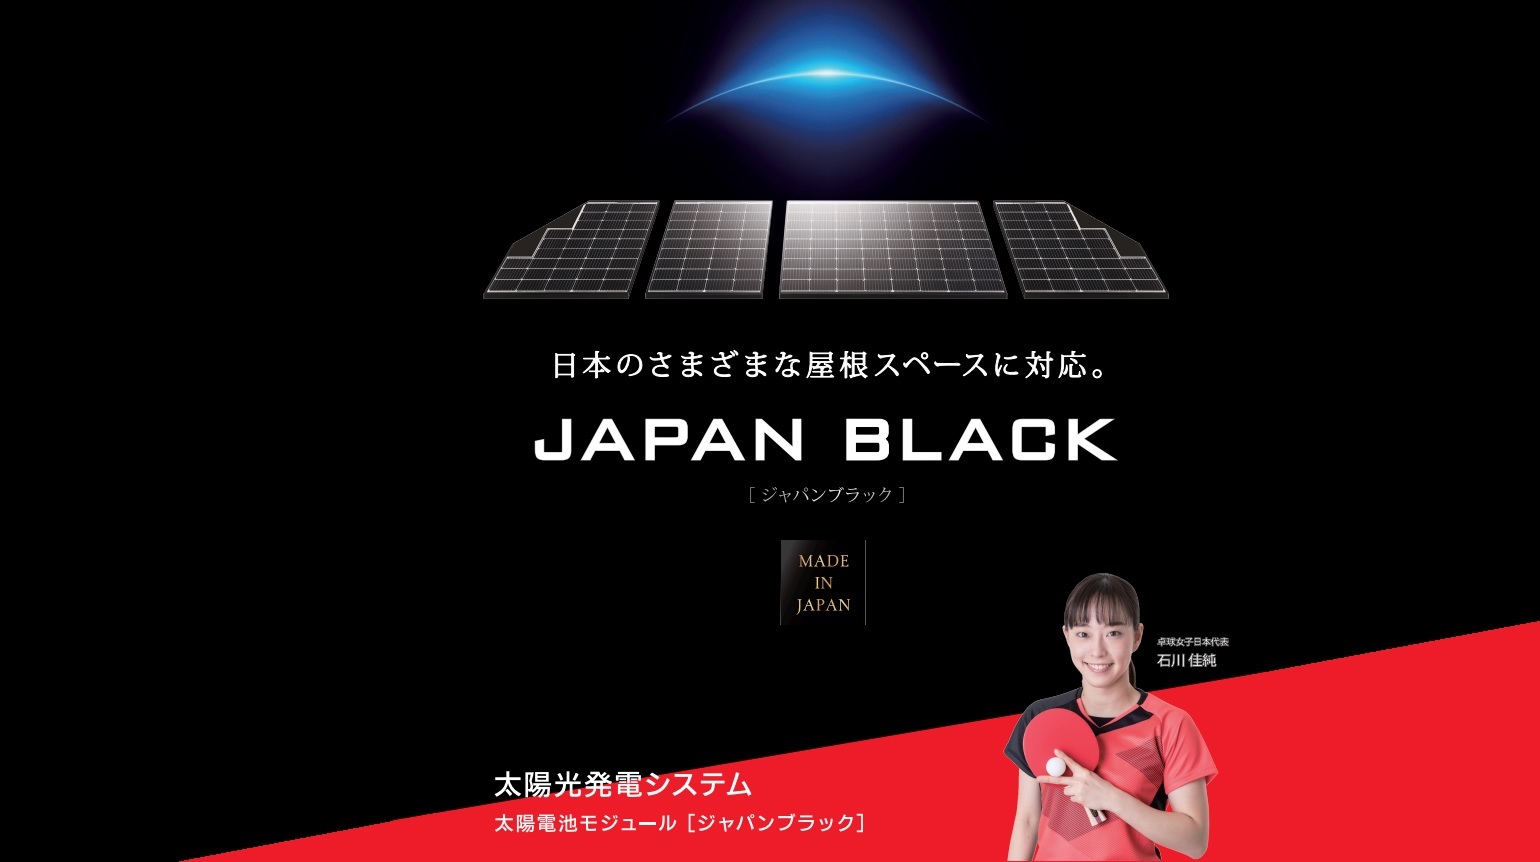 Japan Black Solar.jpg